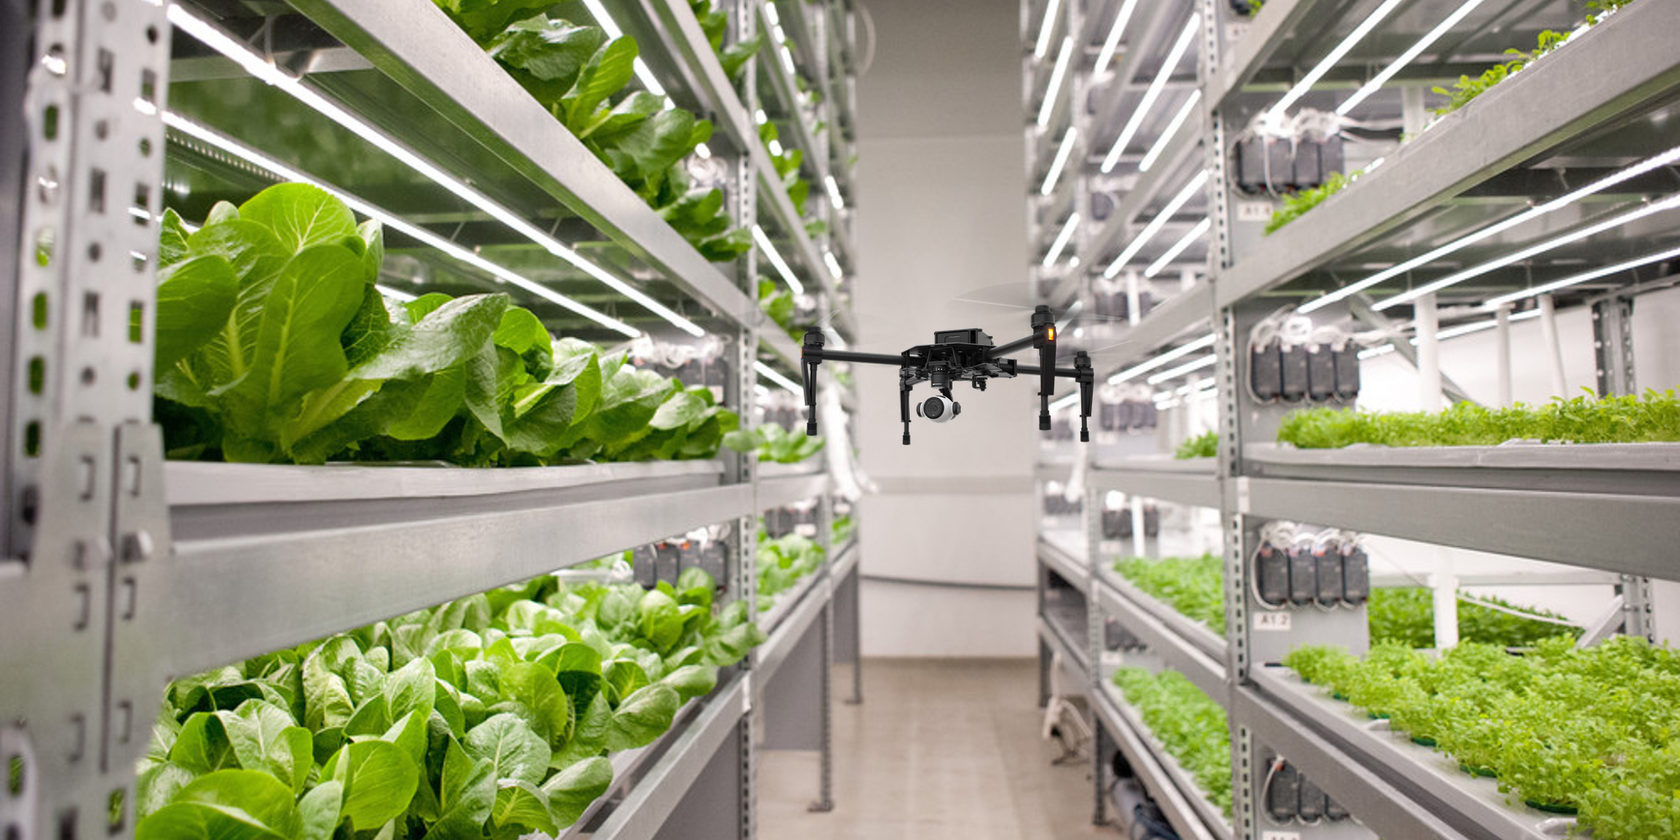 Autonomous drones will help to observe plants